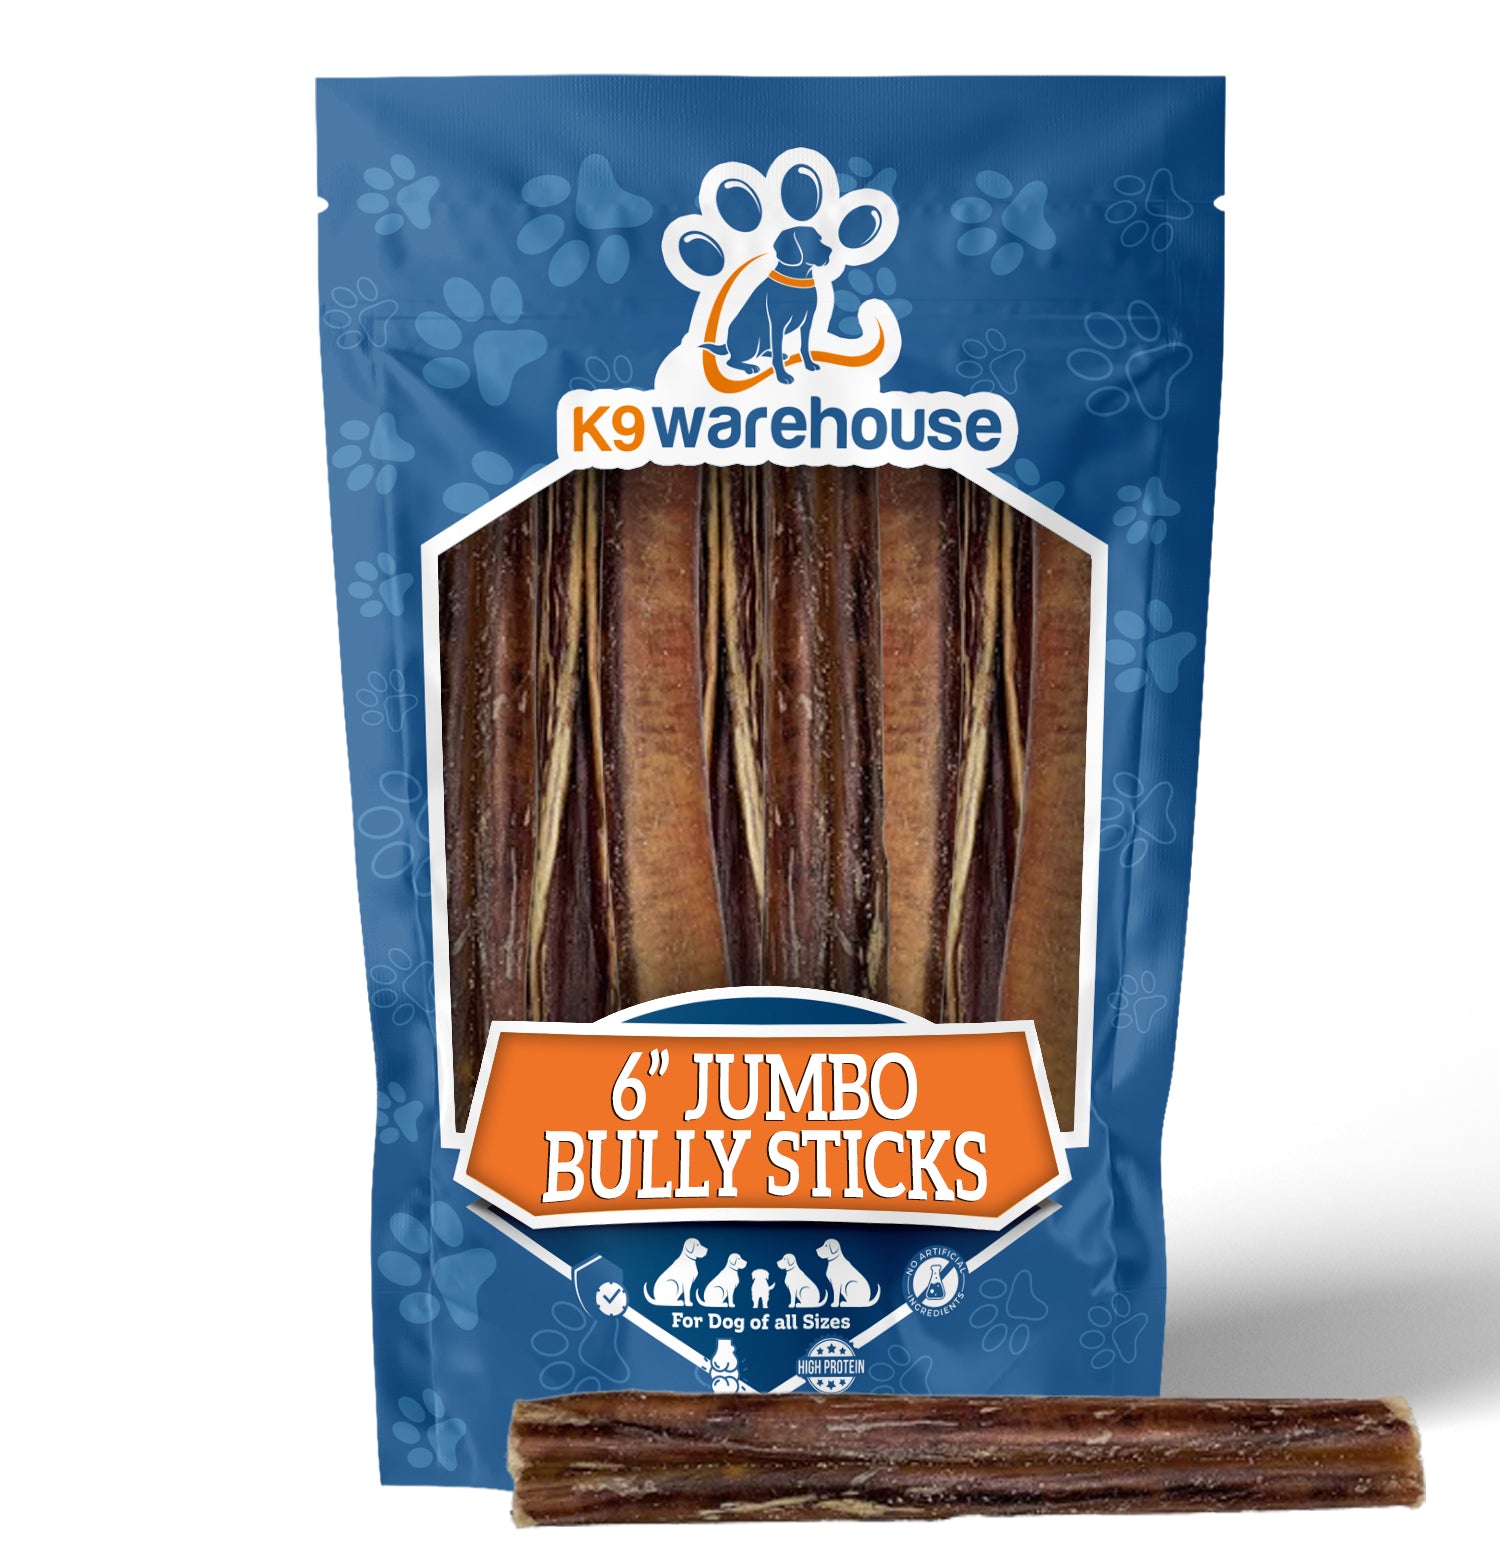 6" Jumbo Bully Sticks - 3 Pack